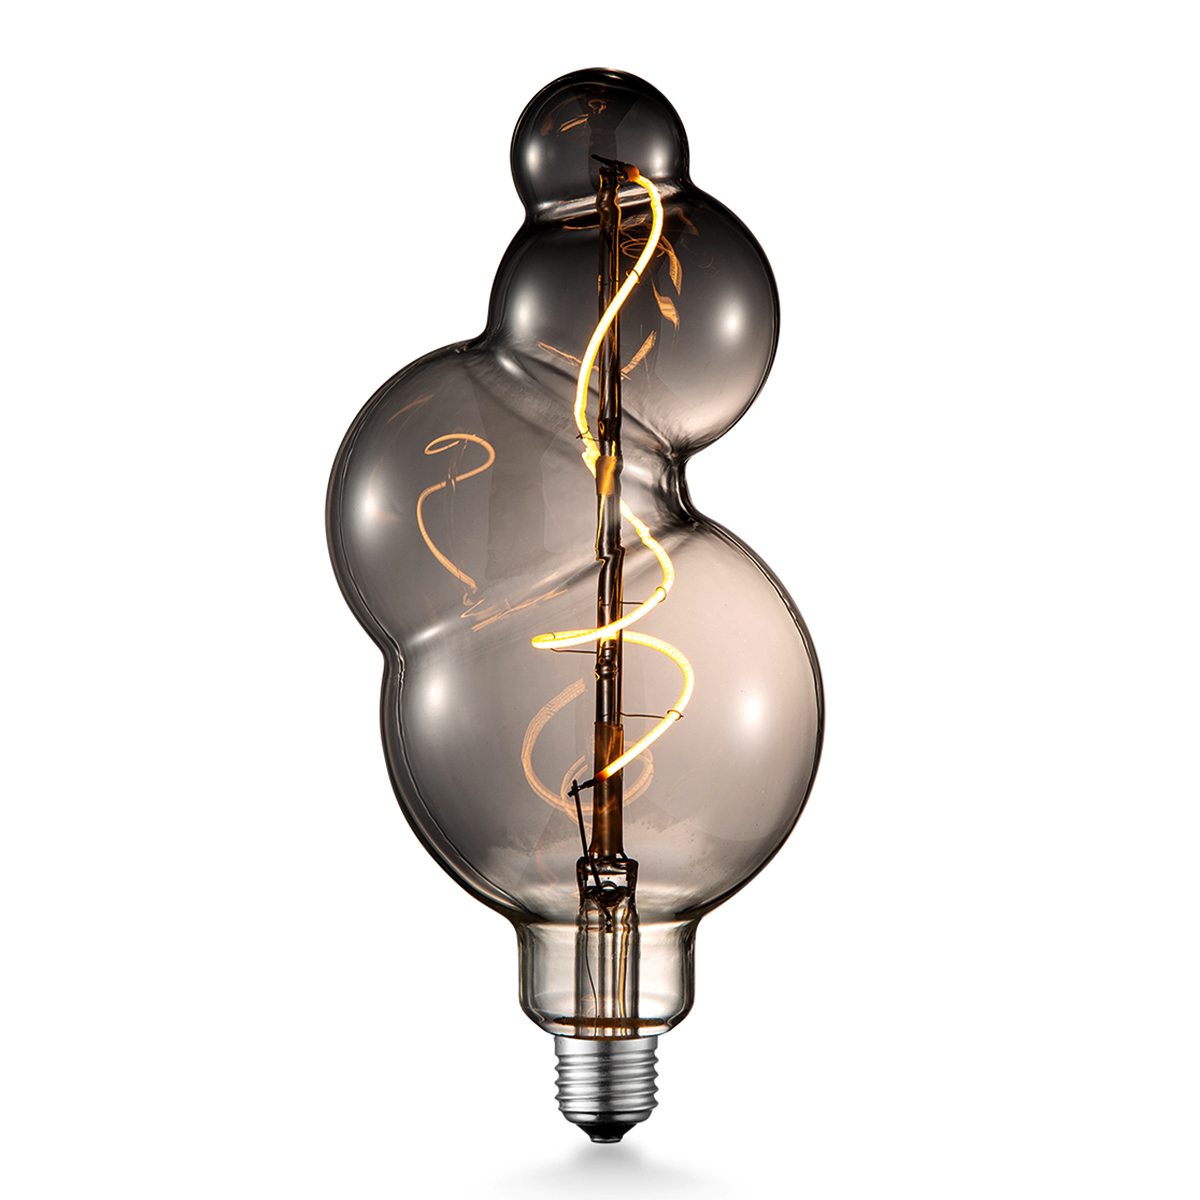 Tangla lighting - TLB-8050-04TM - LED Light Bulb Single Spiral filament - special 4W titanium - Fibonacci - dimmable - E27